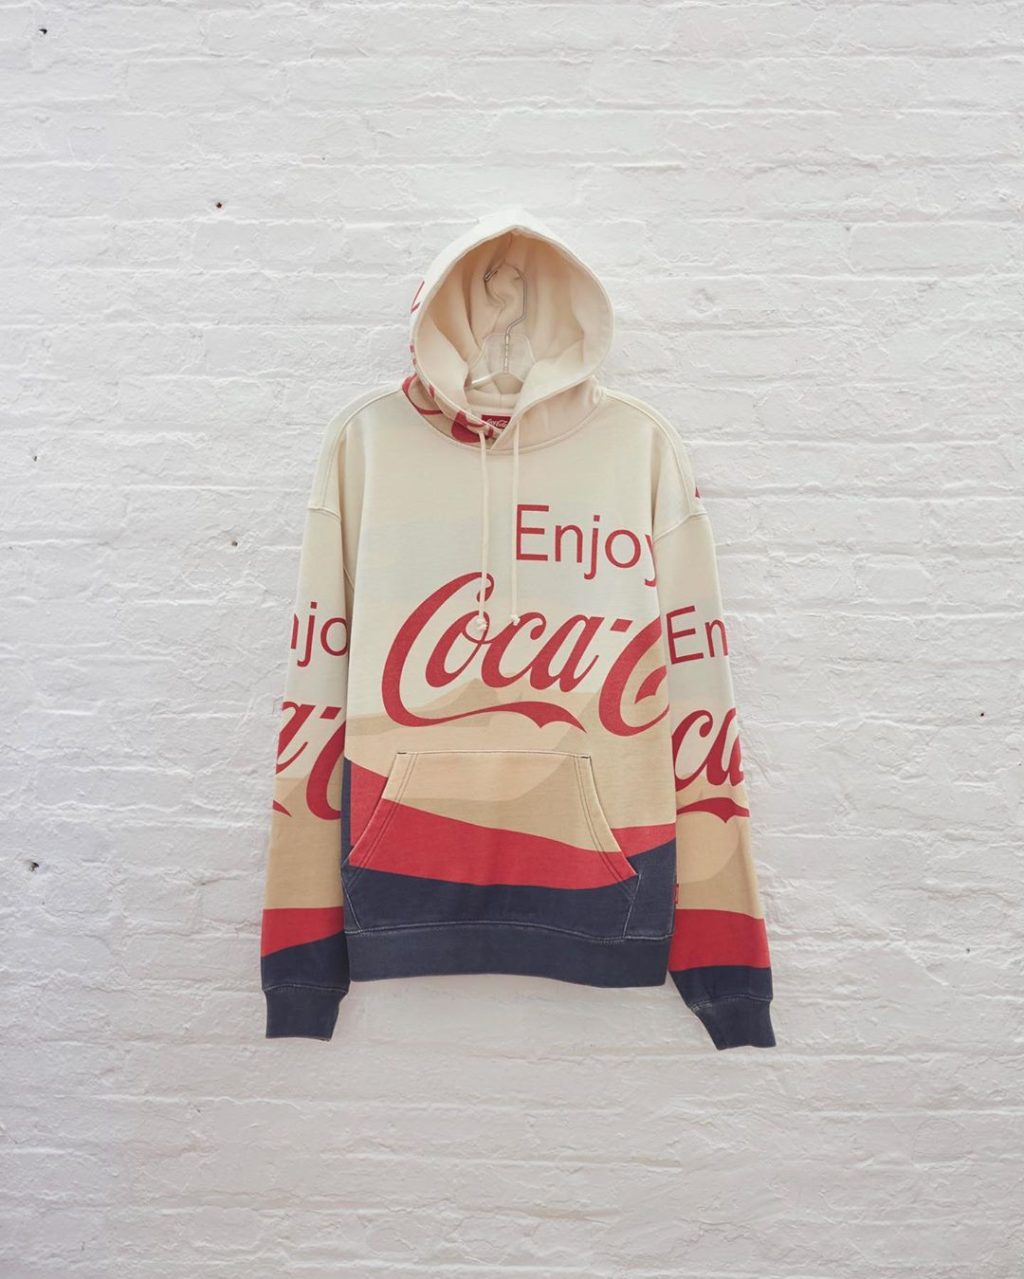 kith-coca-cola-5th-collaboration-release-20200815